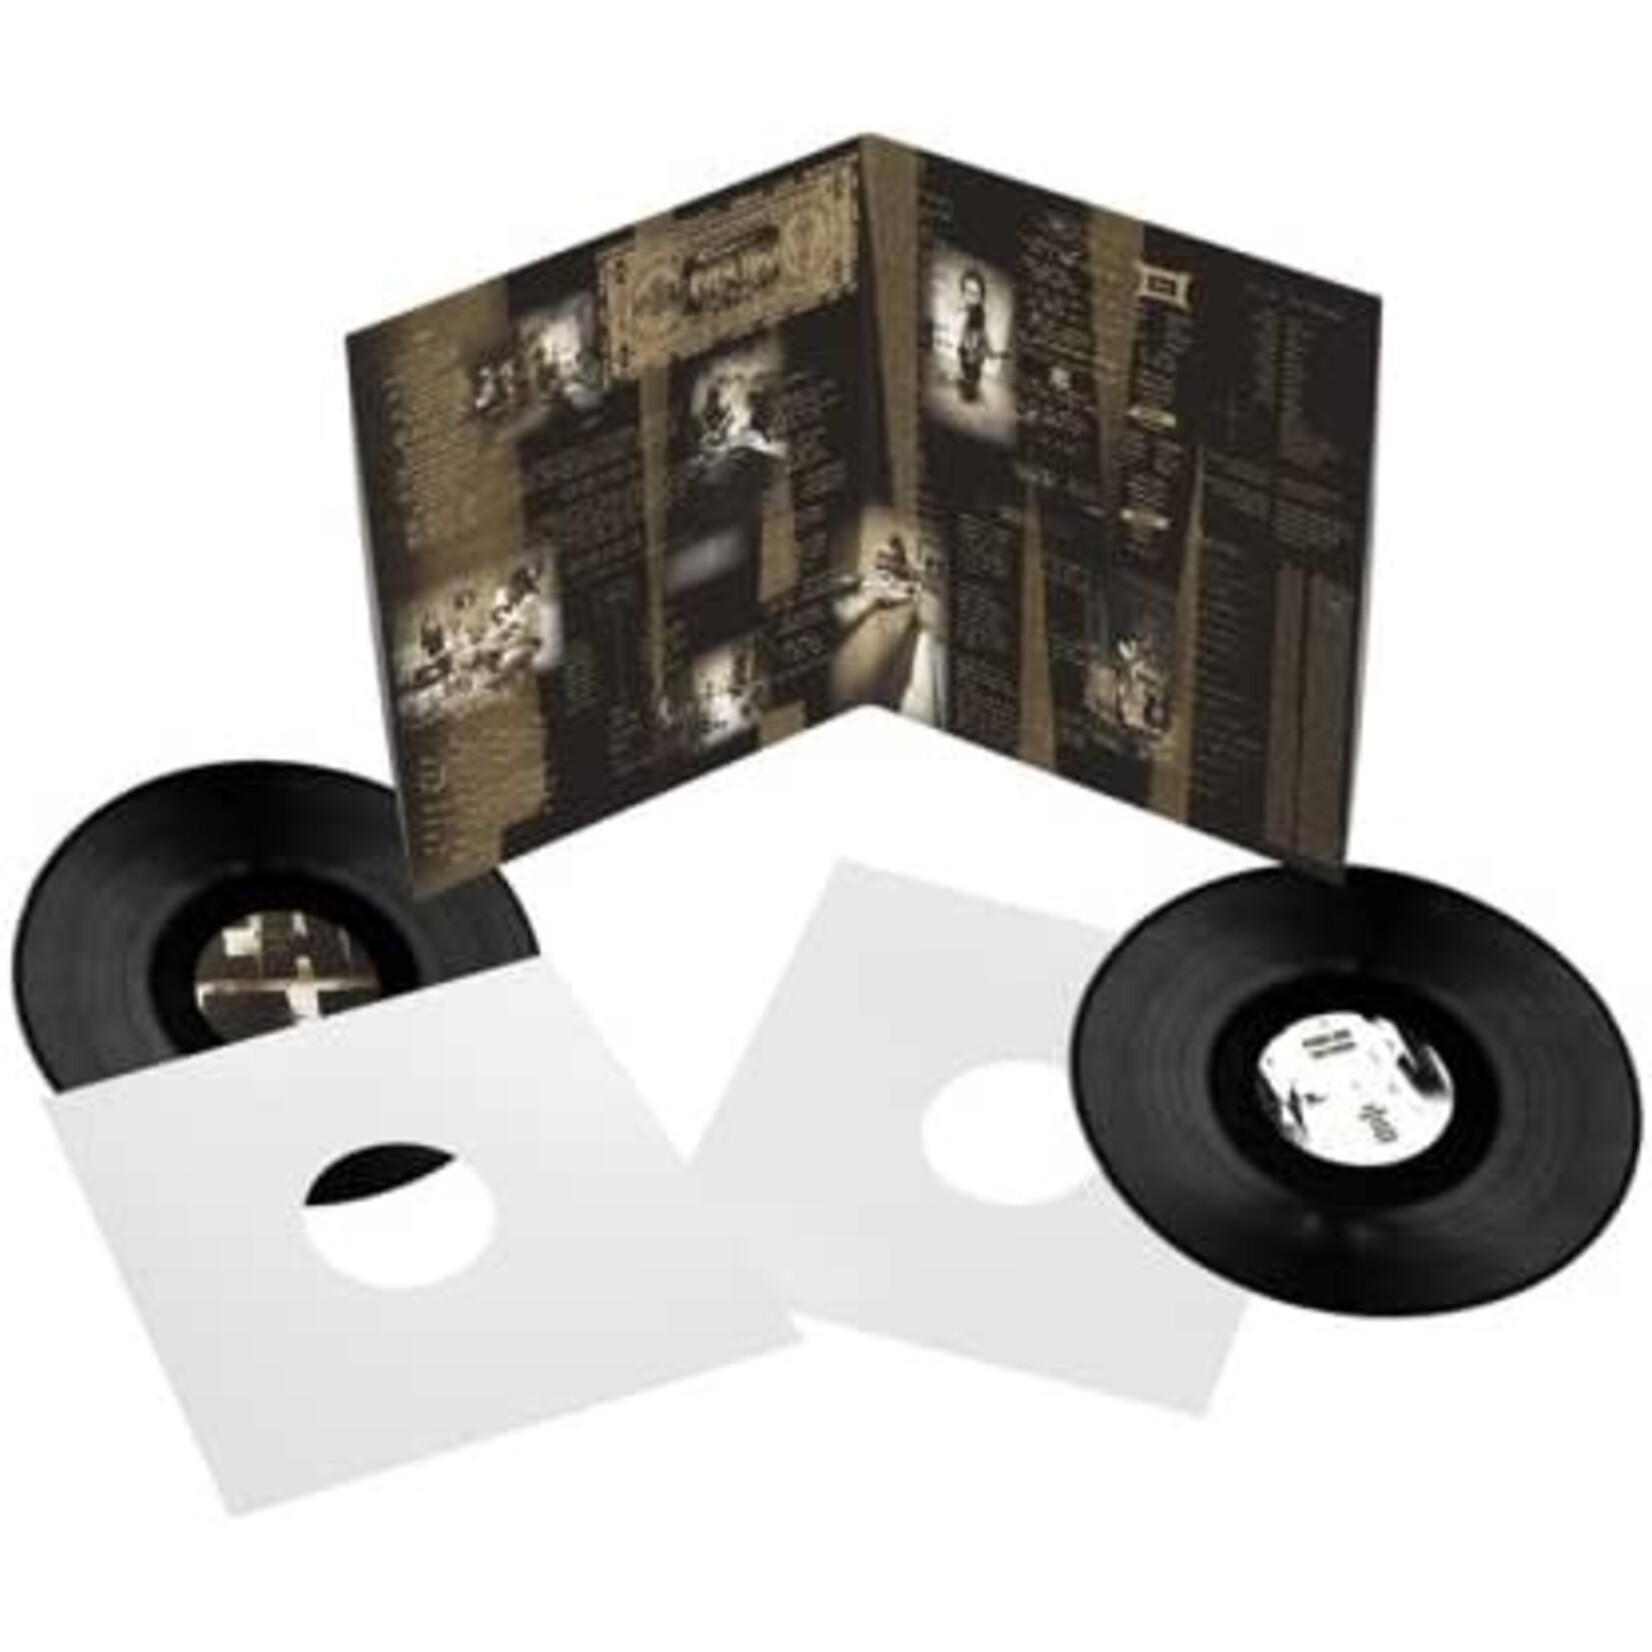 Vinyl Pearl Jam - Ten Deluxe Edition. 2LP